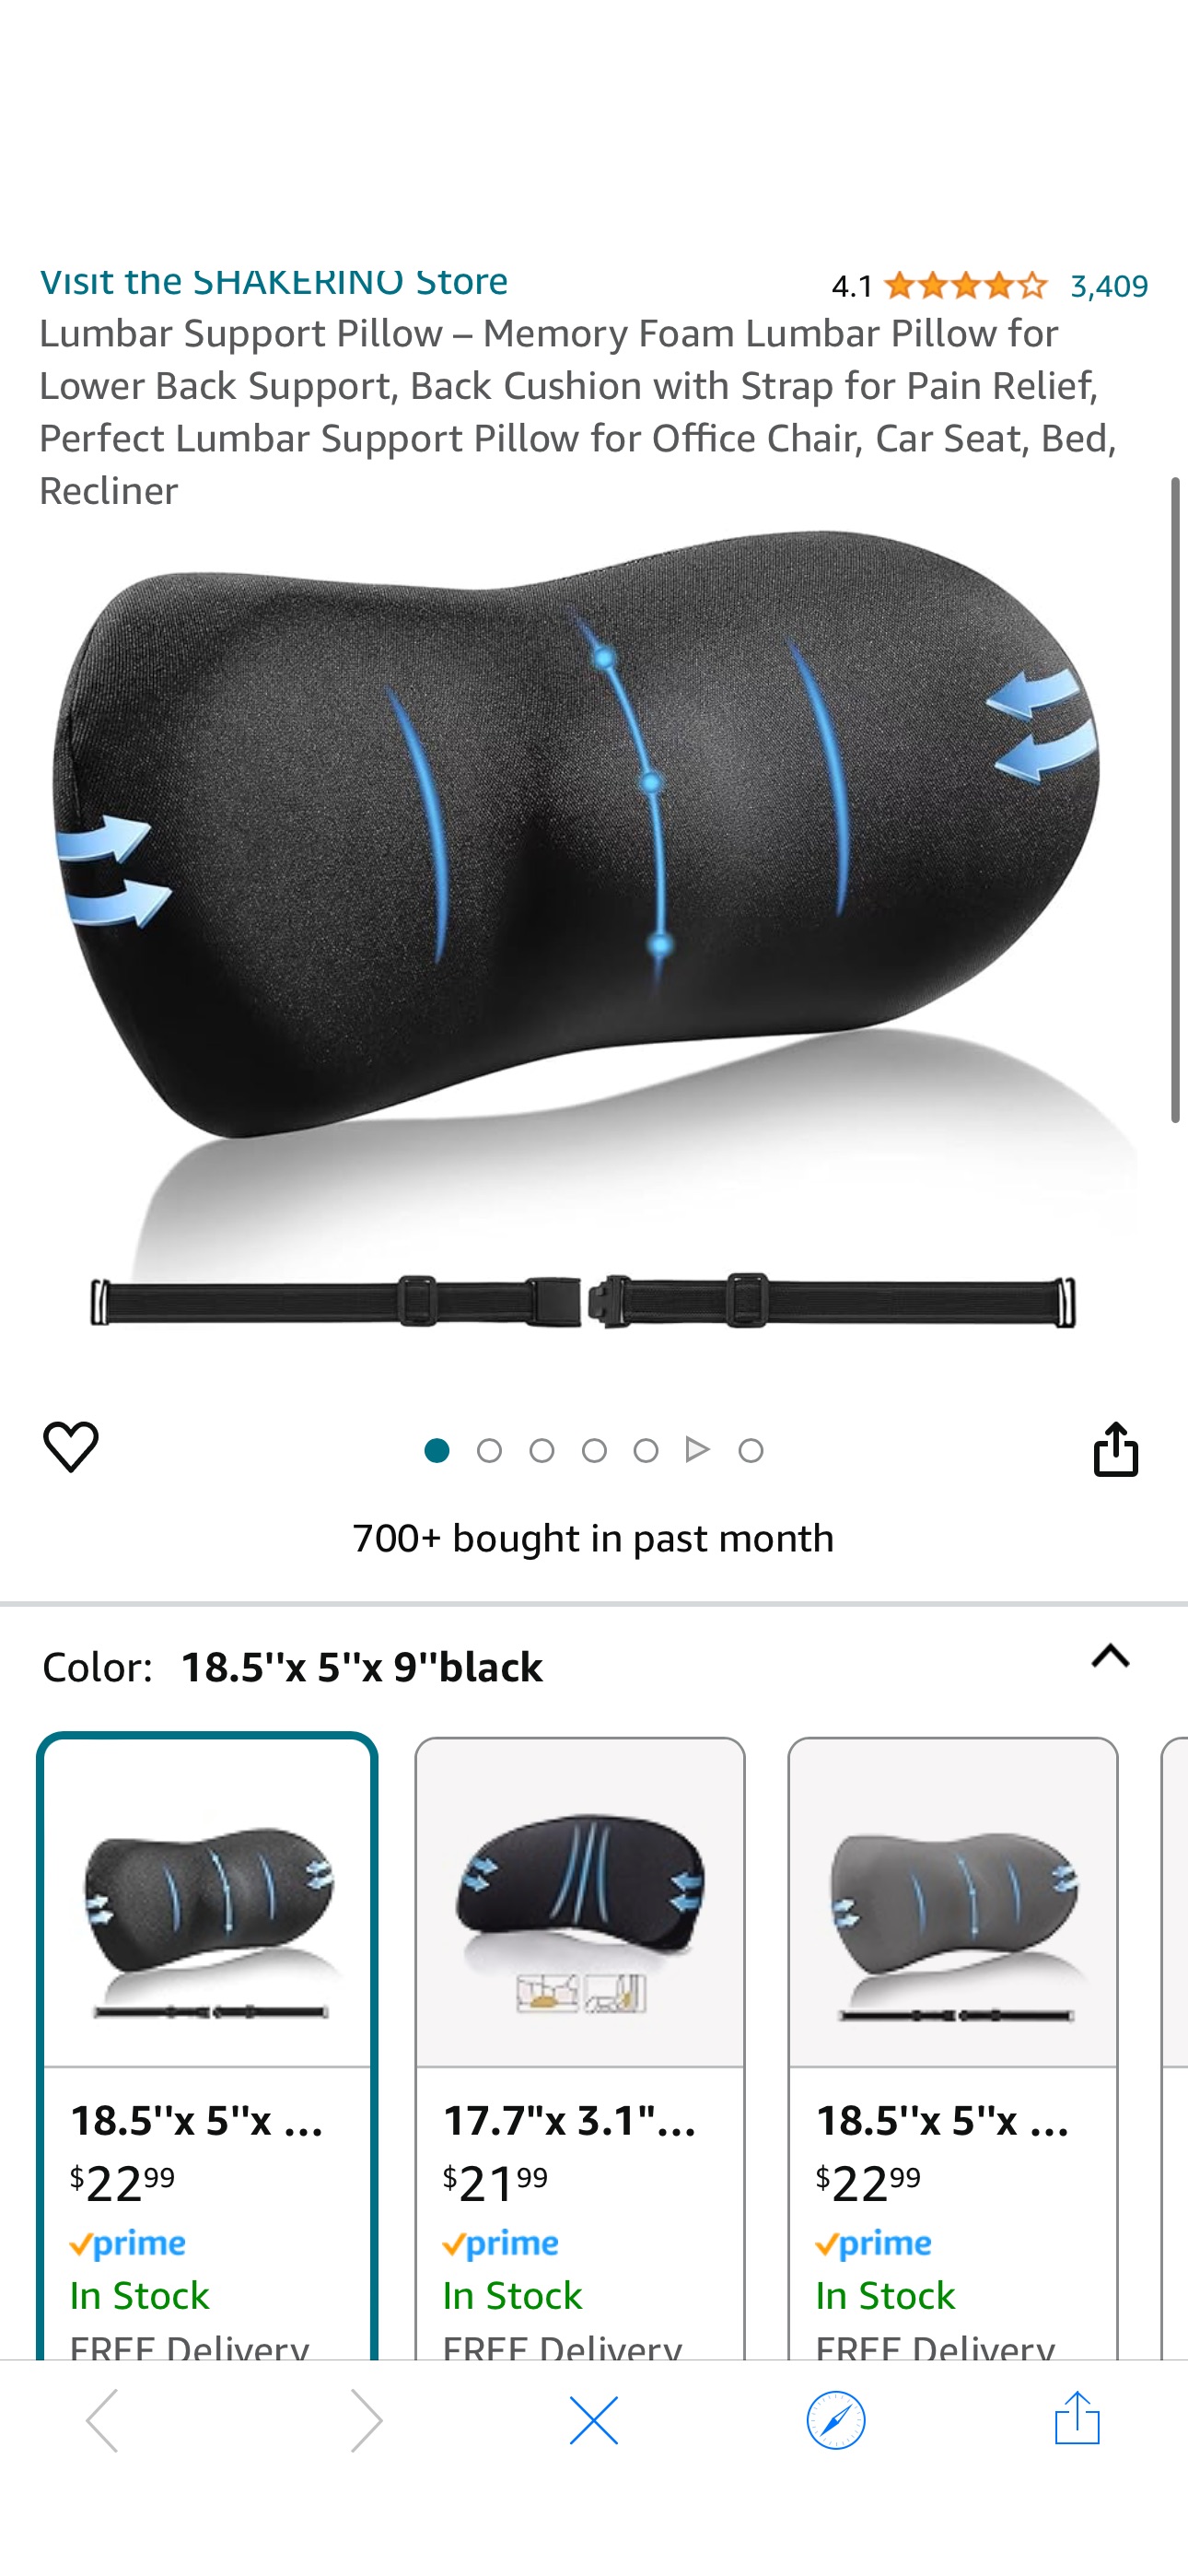 Amazon.com: SHAKERINO Lumbar Support Pillow – Memory Foam Lumbar Pillow $9.19 Lumbar Support Pillow
Use Code 50X5K39D
Clip Coupon